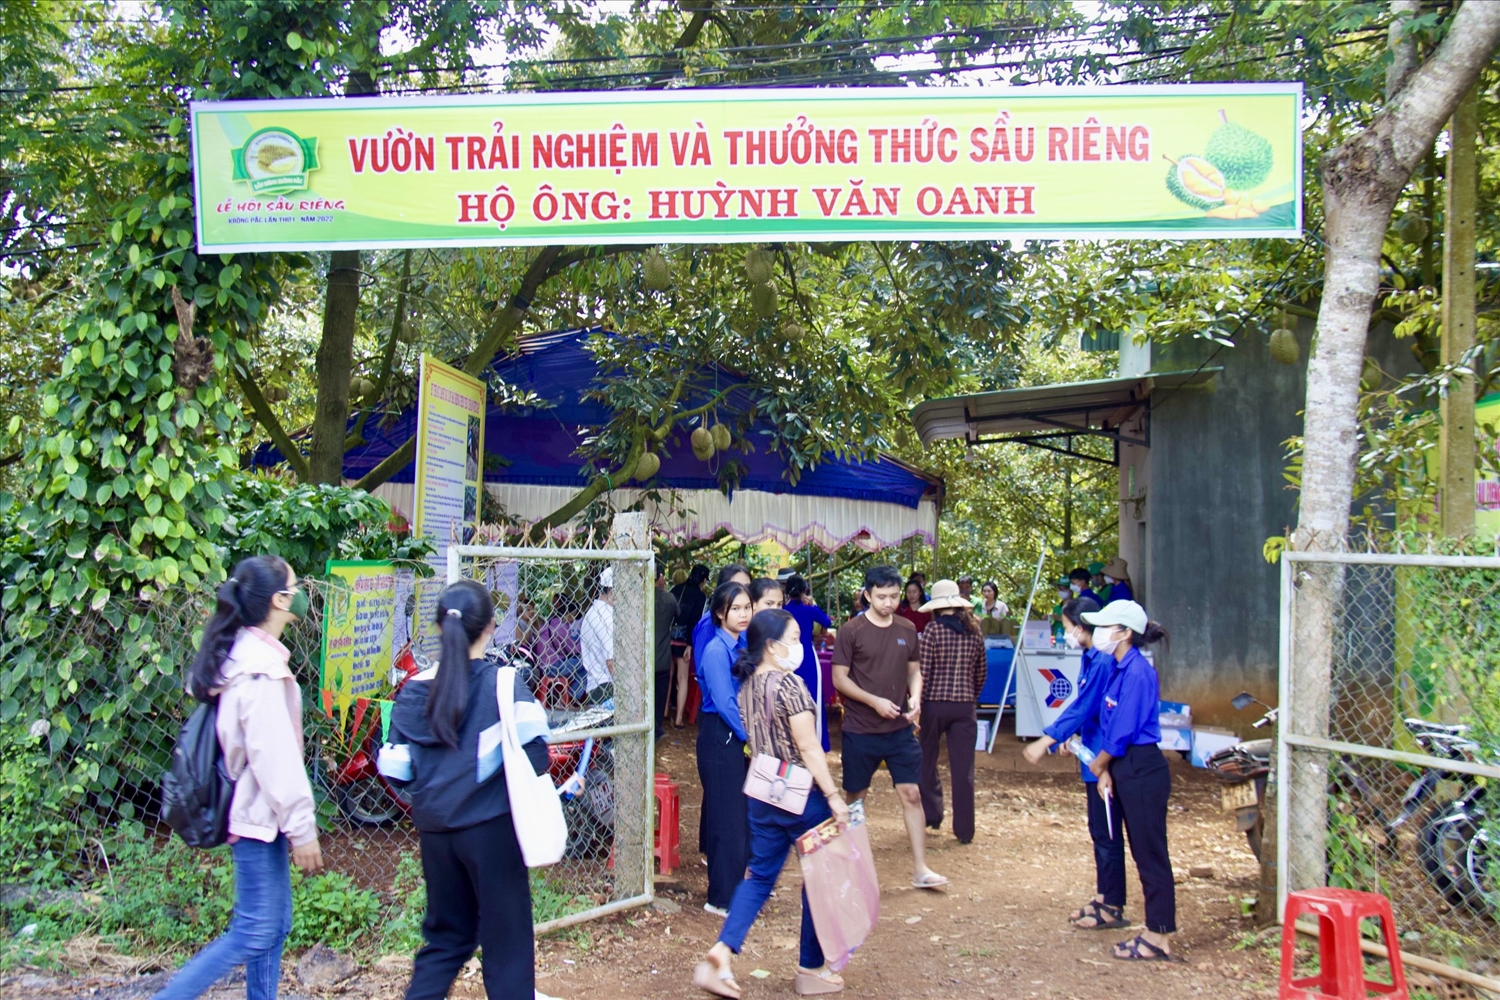 Theo Ban tổ chức Lễ hội sầu riêng Krông Pắk, lượt khách tham quan, trải nghiệm vườn sầu riêng đã tăng cao so với dự kiến. Trong sáng 1/9, đã có khoảng 1.000 lượt khách đến tham quan trải nghiệm